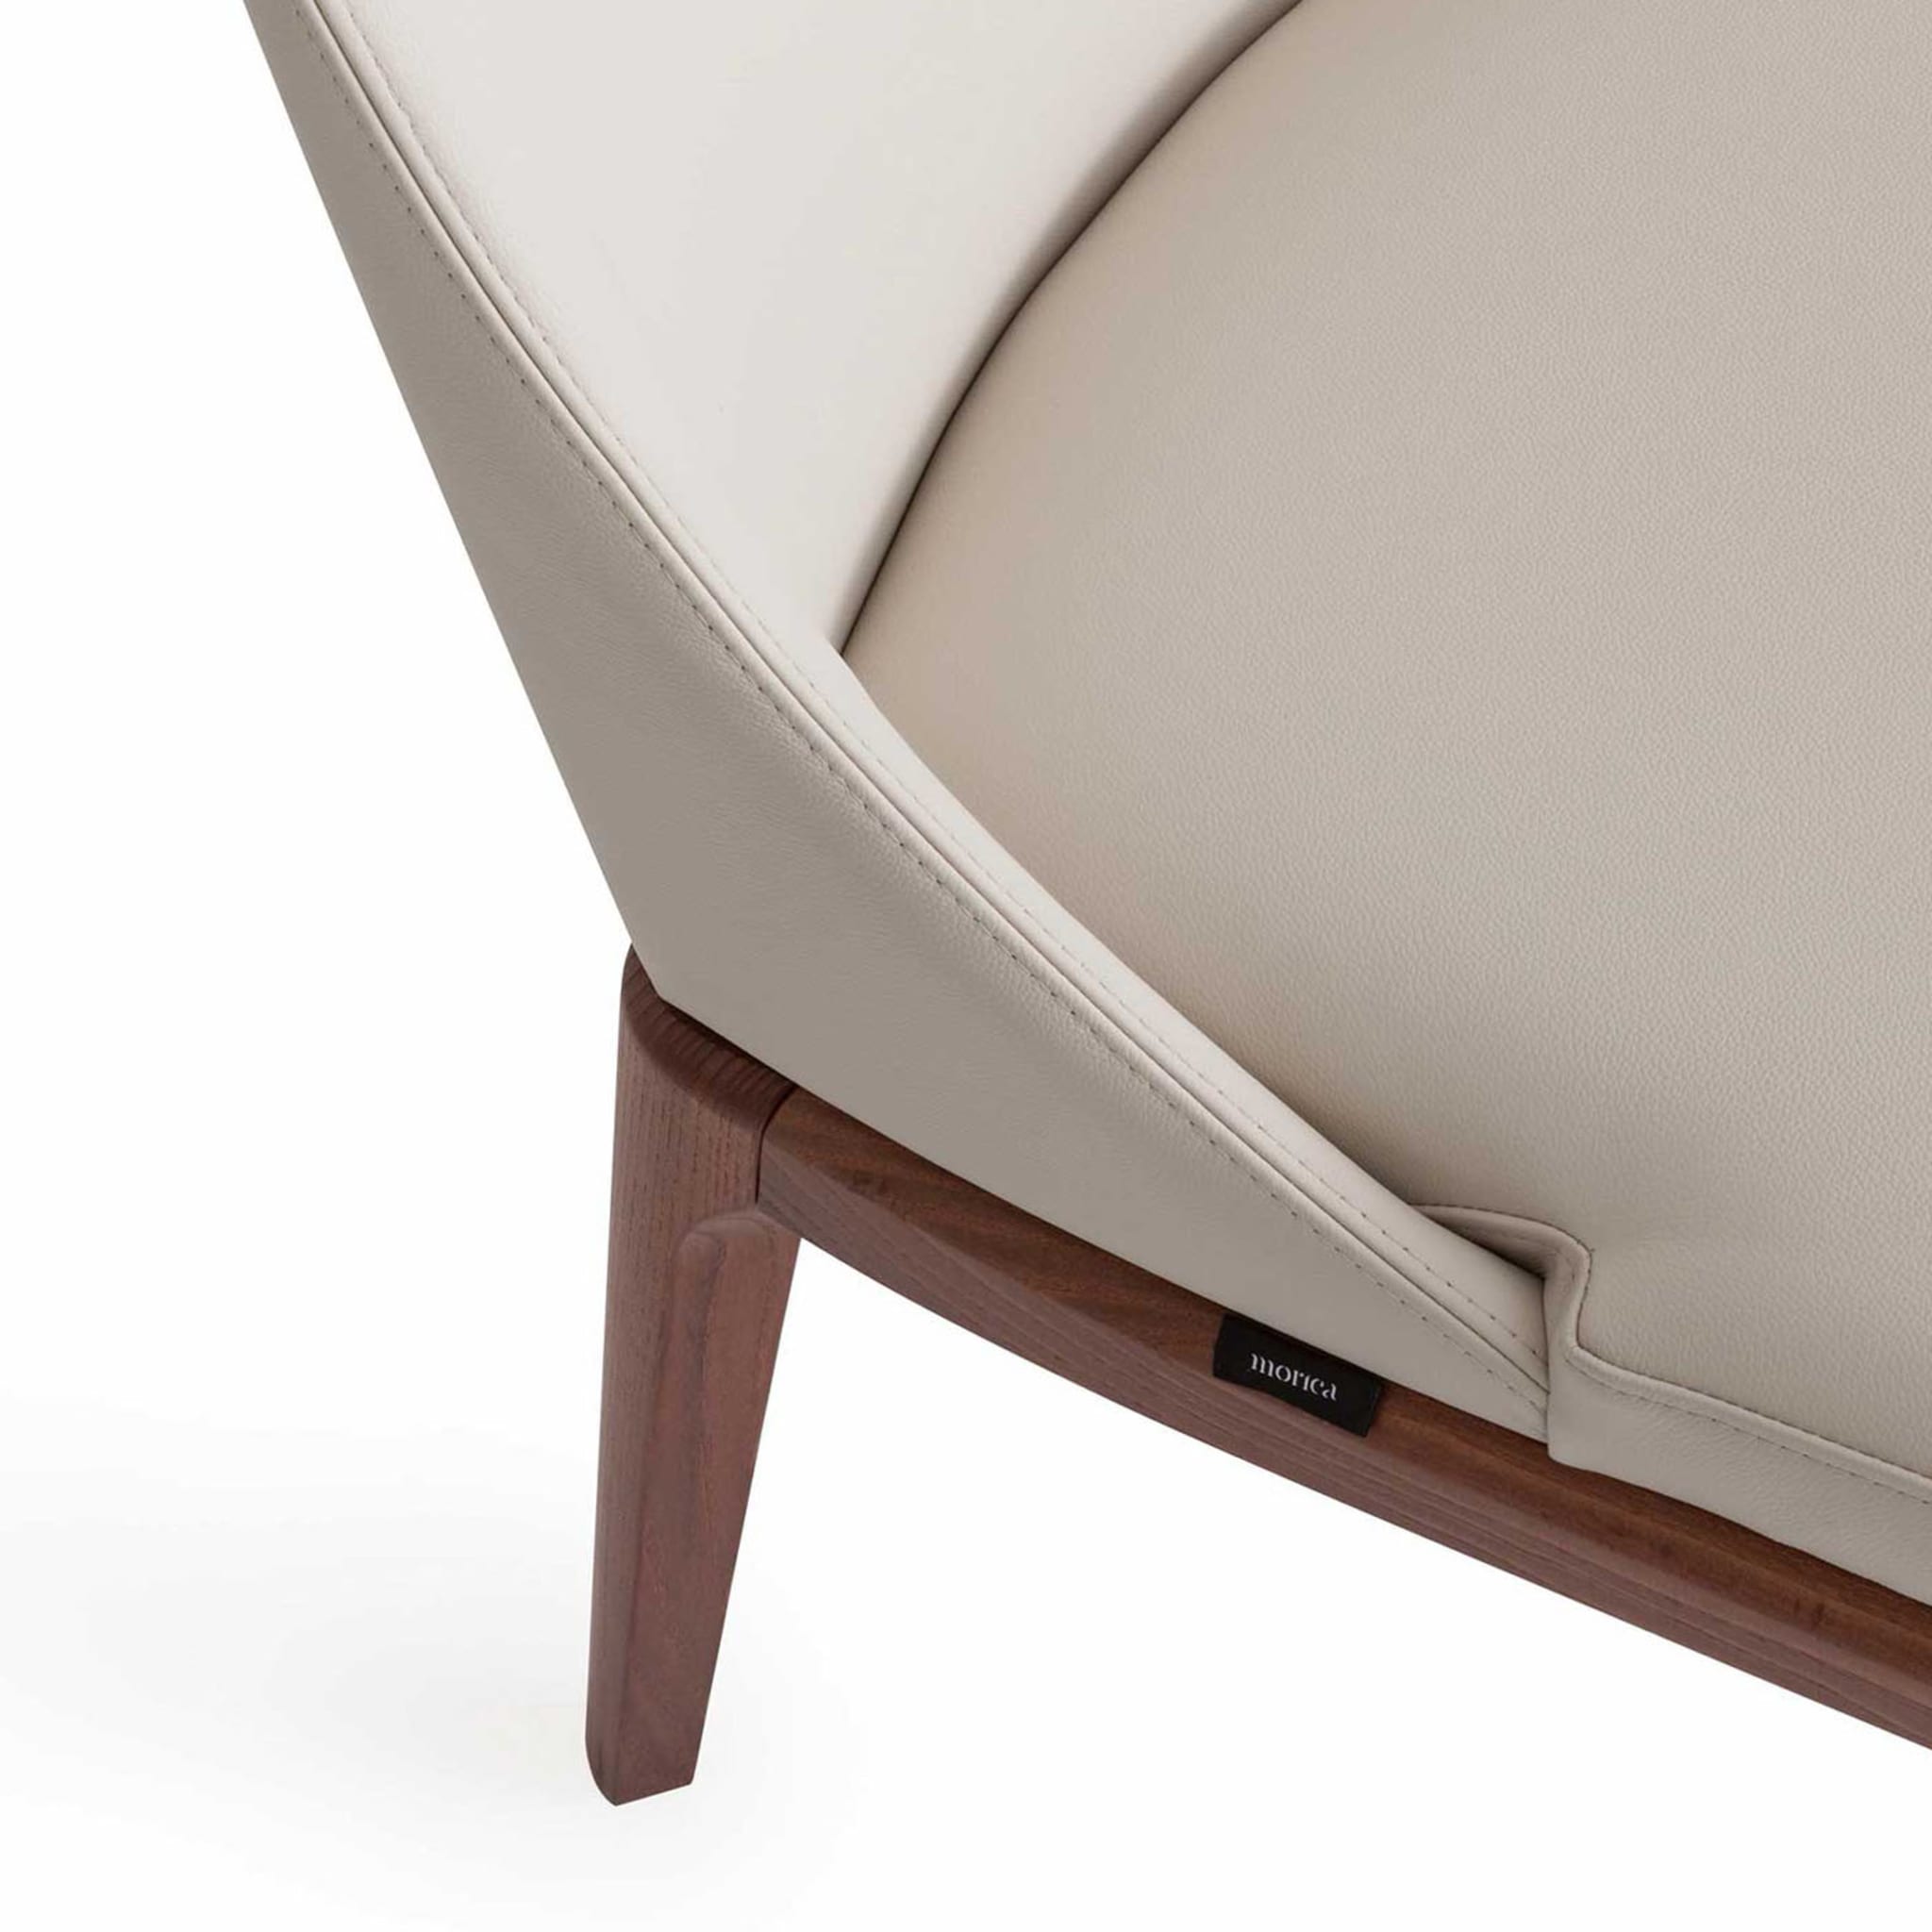 Antigona White Leather Chair - Alternative view 4